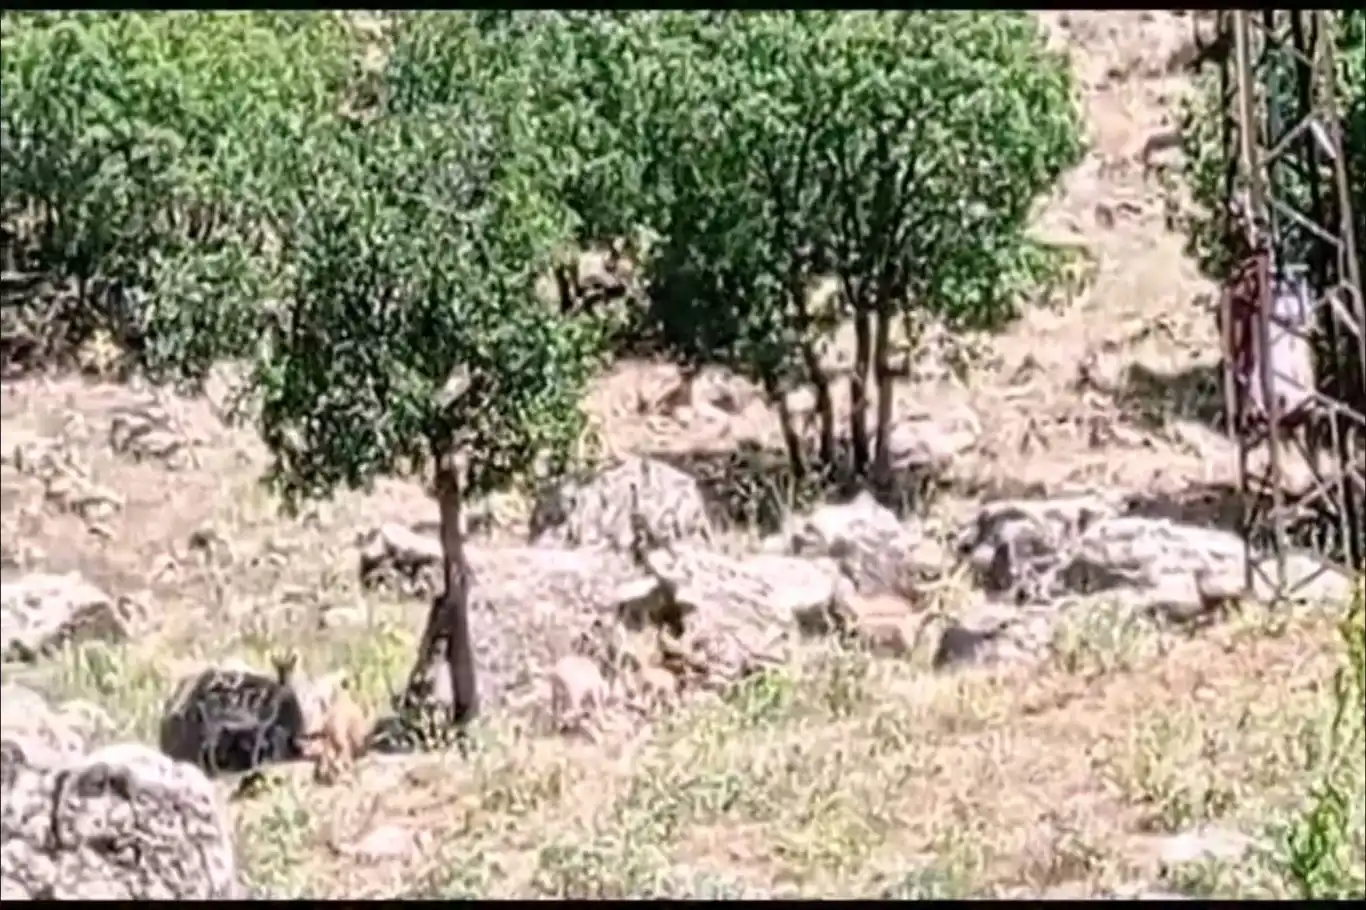 Elazığ'da dağ keçileri sürü şeklinde görüntülendi